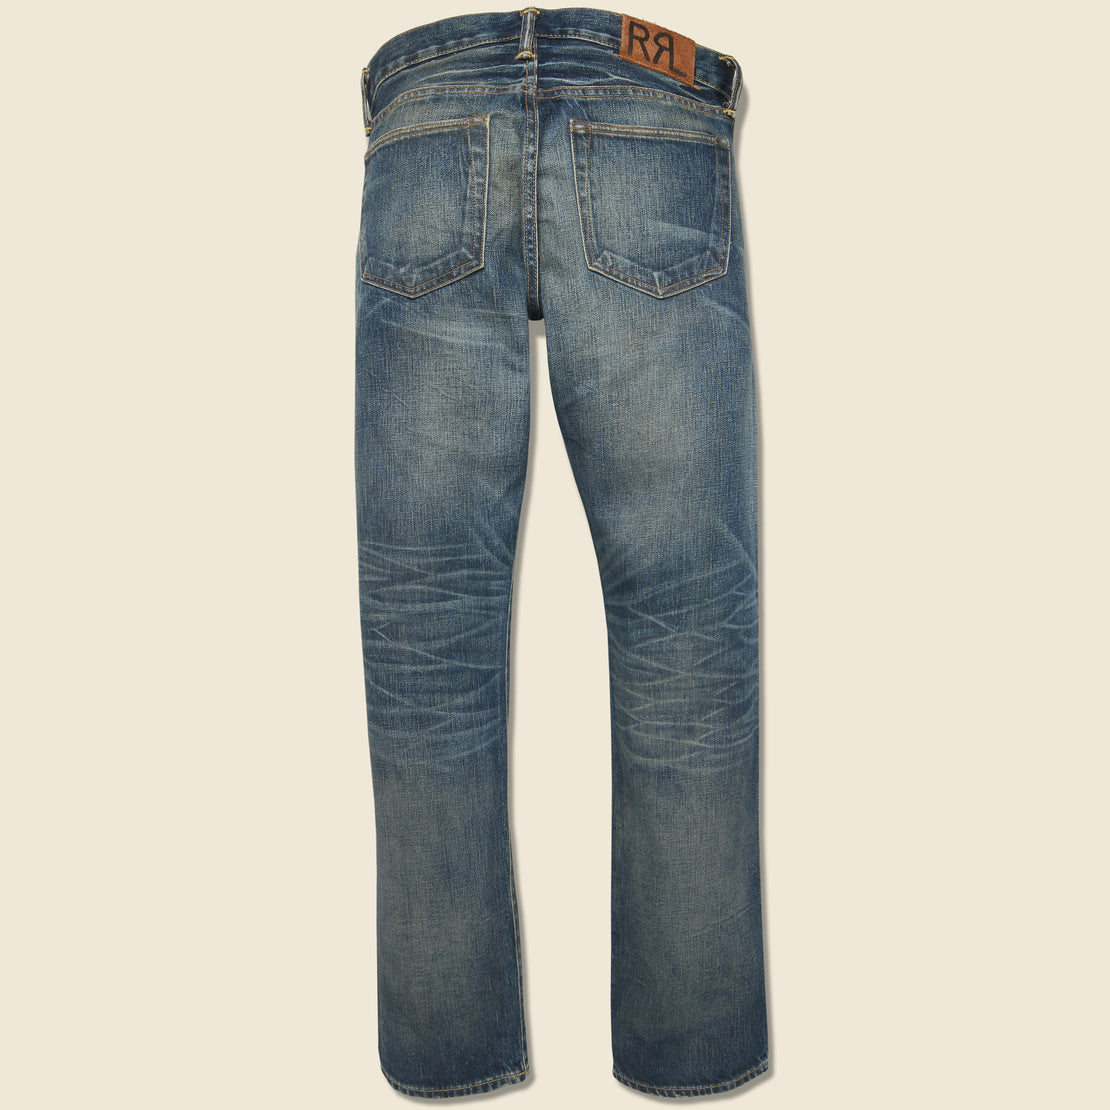 Slim Fit Jean - Ridgecrest Wash - RRL - STAG Provisions - Pants - Denim